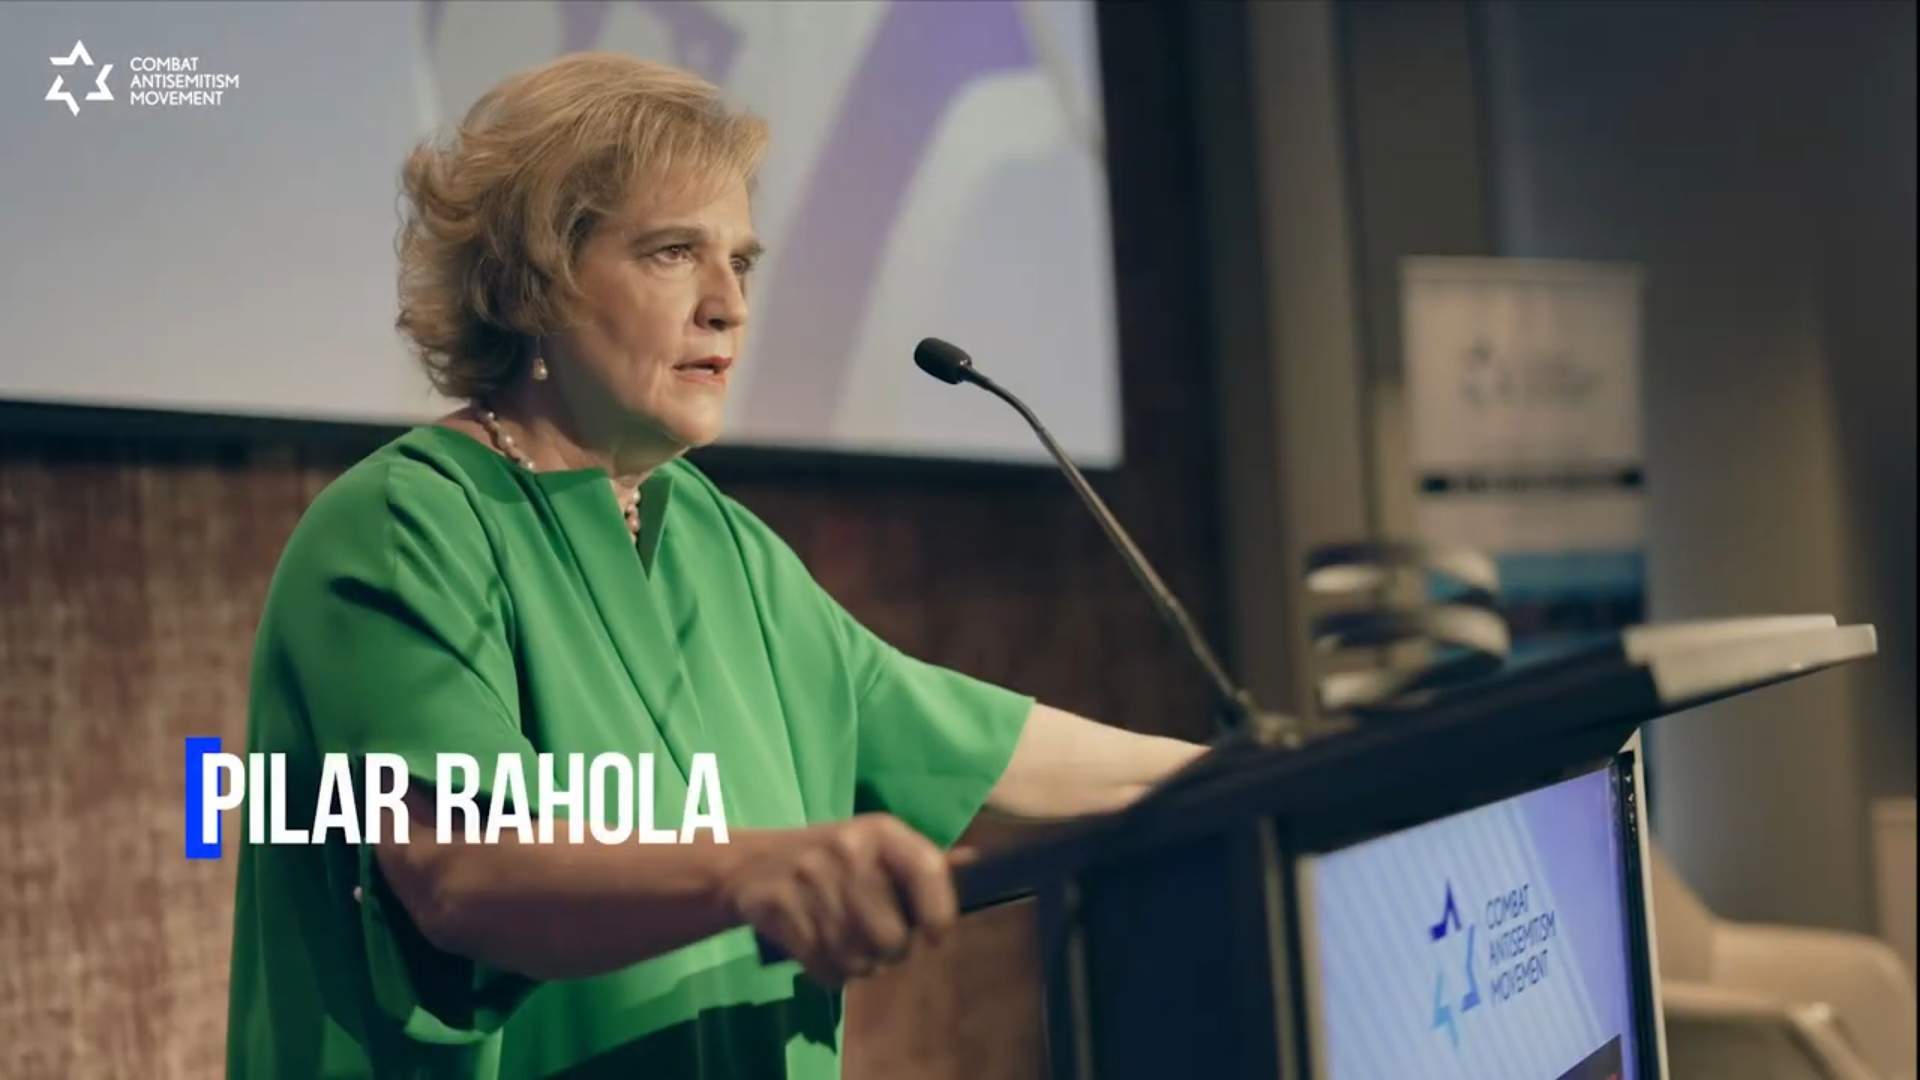 Pilar Rahola rep un important premi internacional en la lluita contra l'antisemitisme